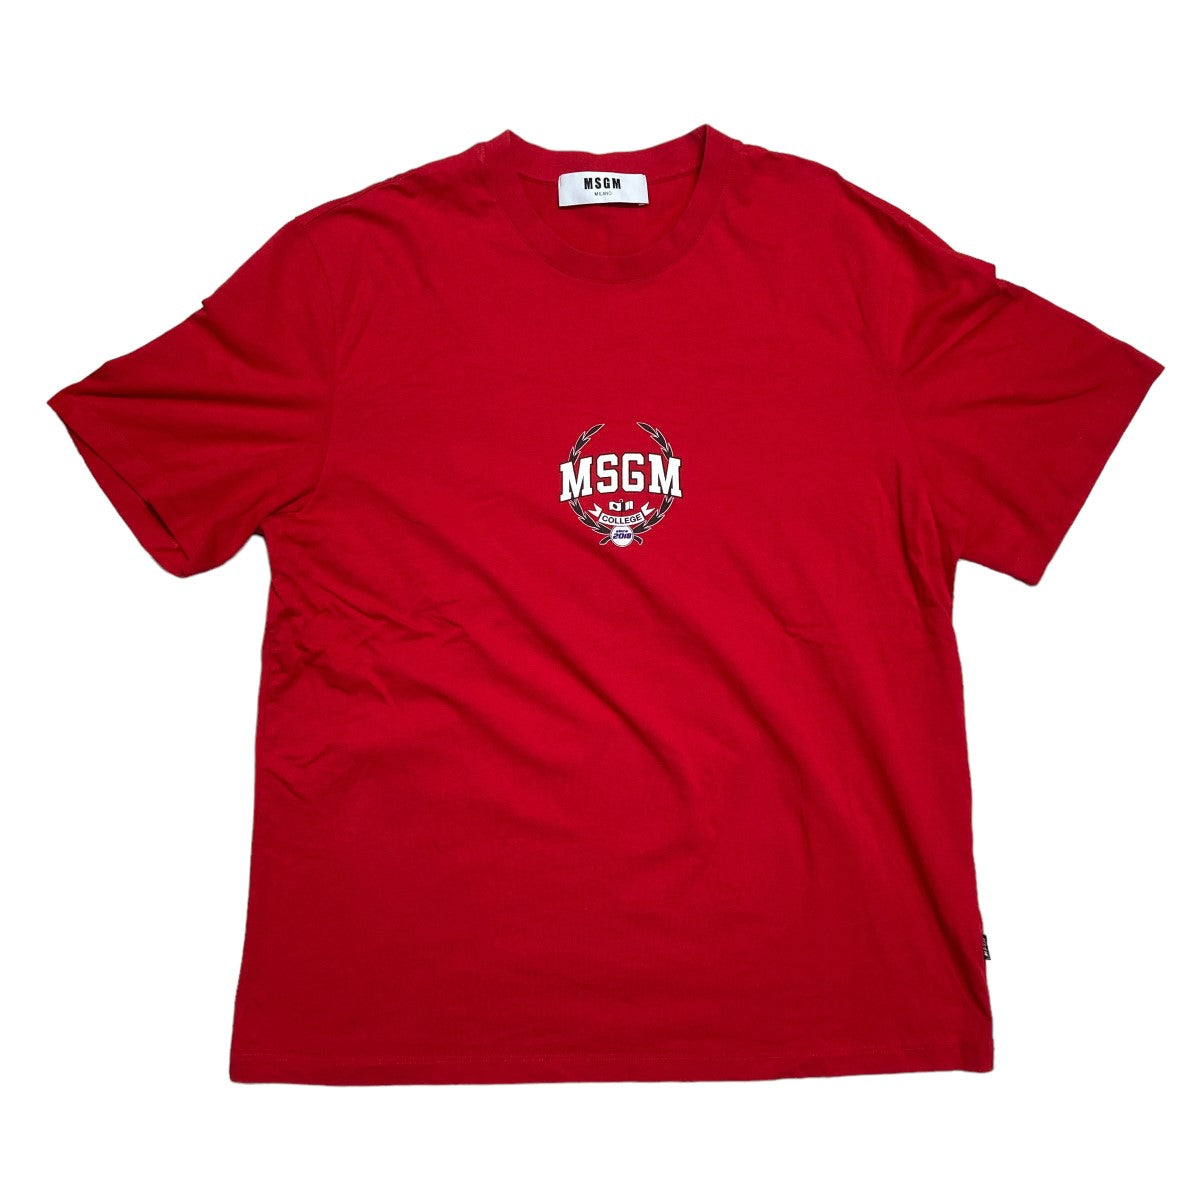 MSGM(エムエスジーエム) ロゴプリント 半袖カットソー Tシャツ 